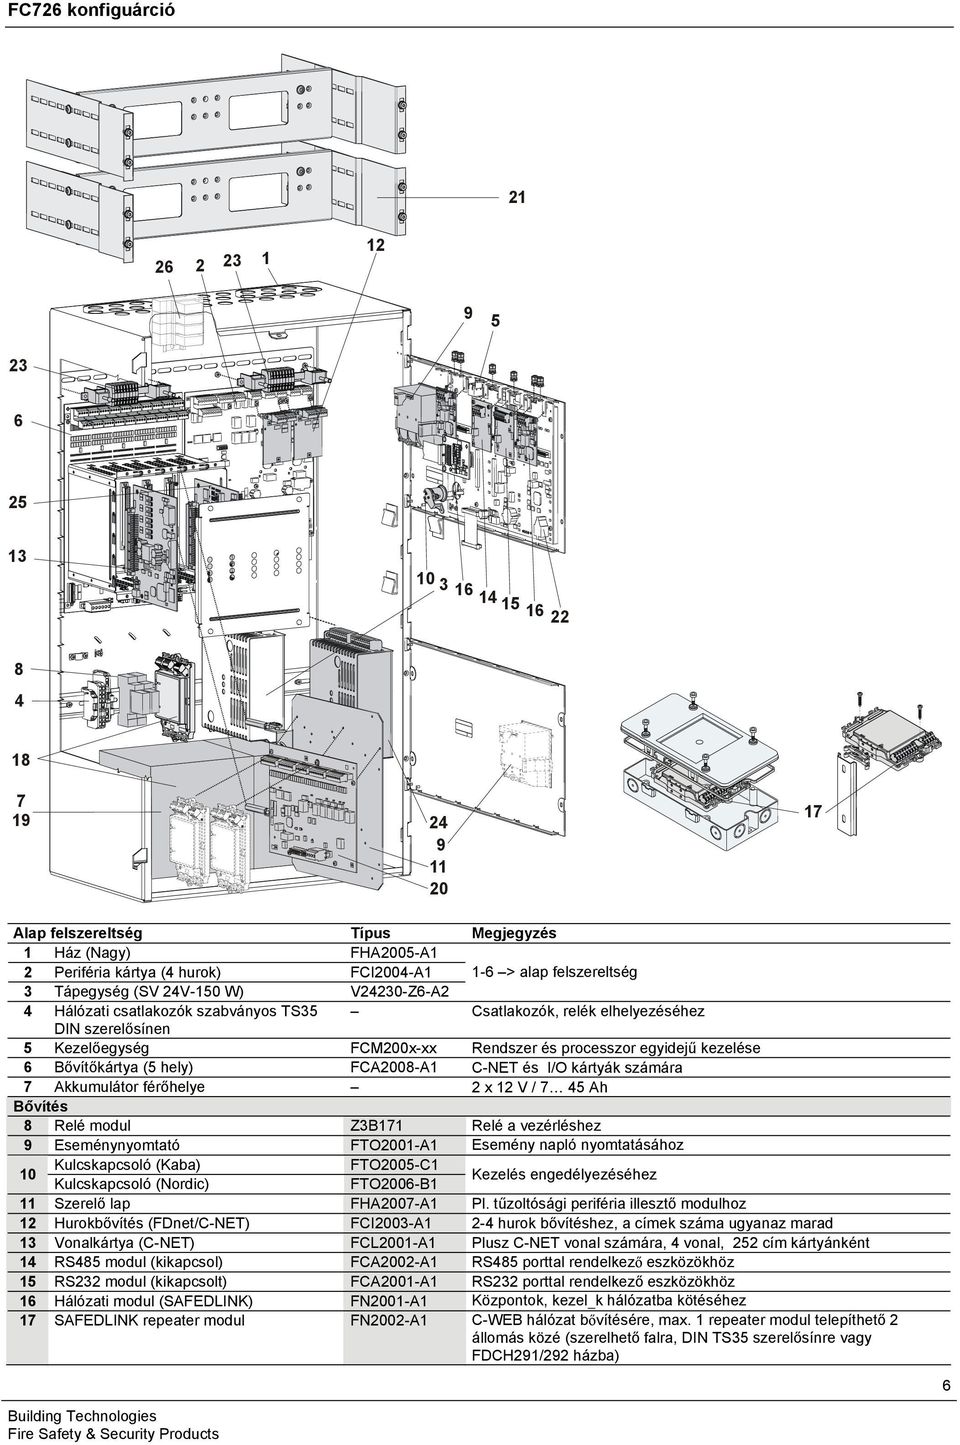 Bővítőkártya (5 hely) FCA2008-A C-NET és I/O kártyák számára 7 Akkumulátor férőhelye 2 x 2 V / 7 45 Ah Bővítés 8 Relé modul Z3B7 Relé a vezérléshez 9 Eseménynyomtató FTO200-A Esemény napló